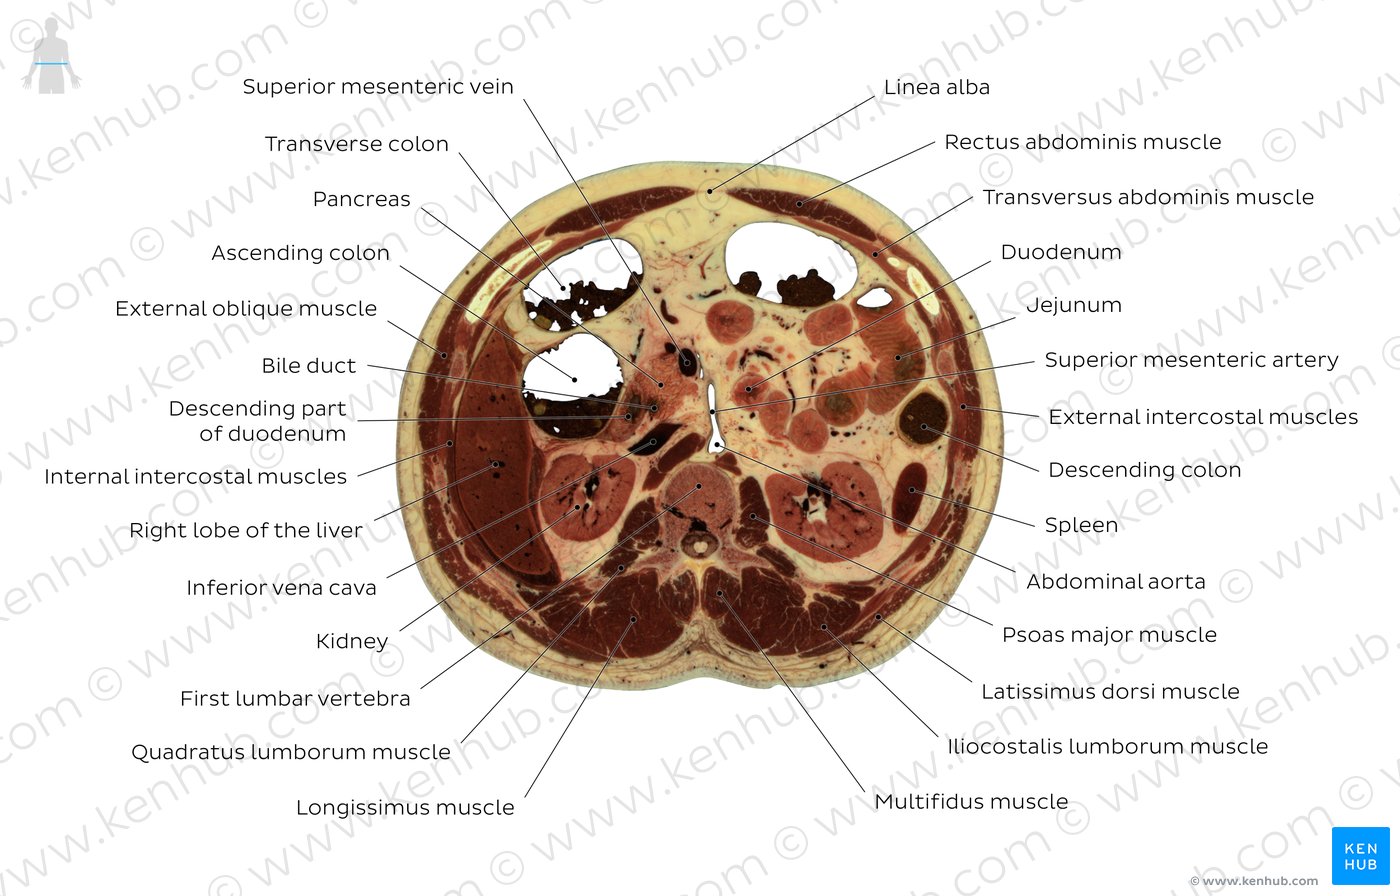 First lumbar vertebra level: Overview